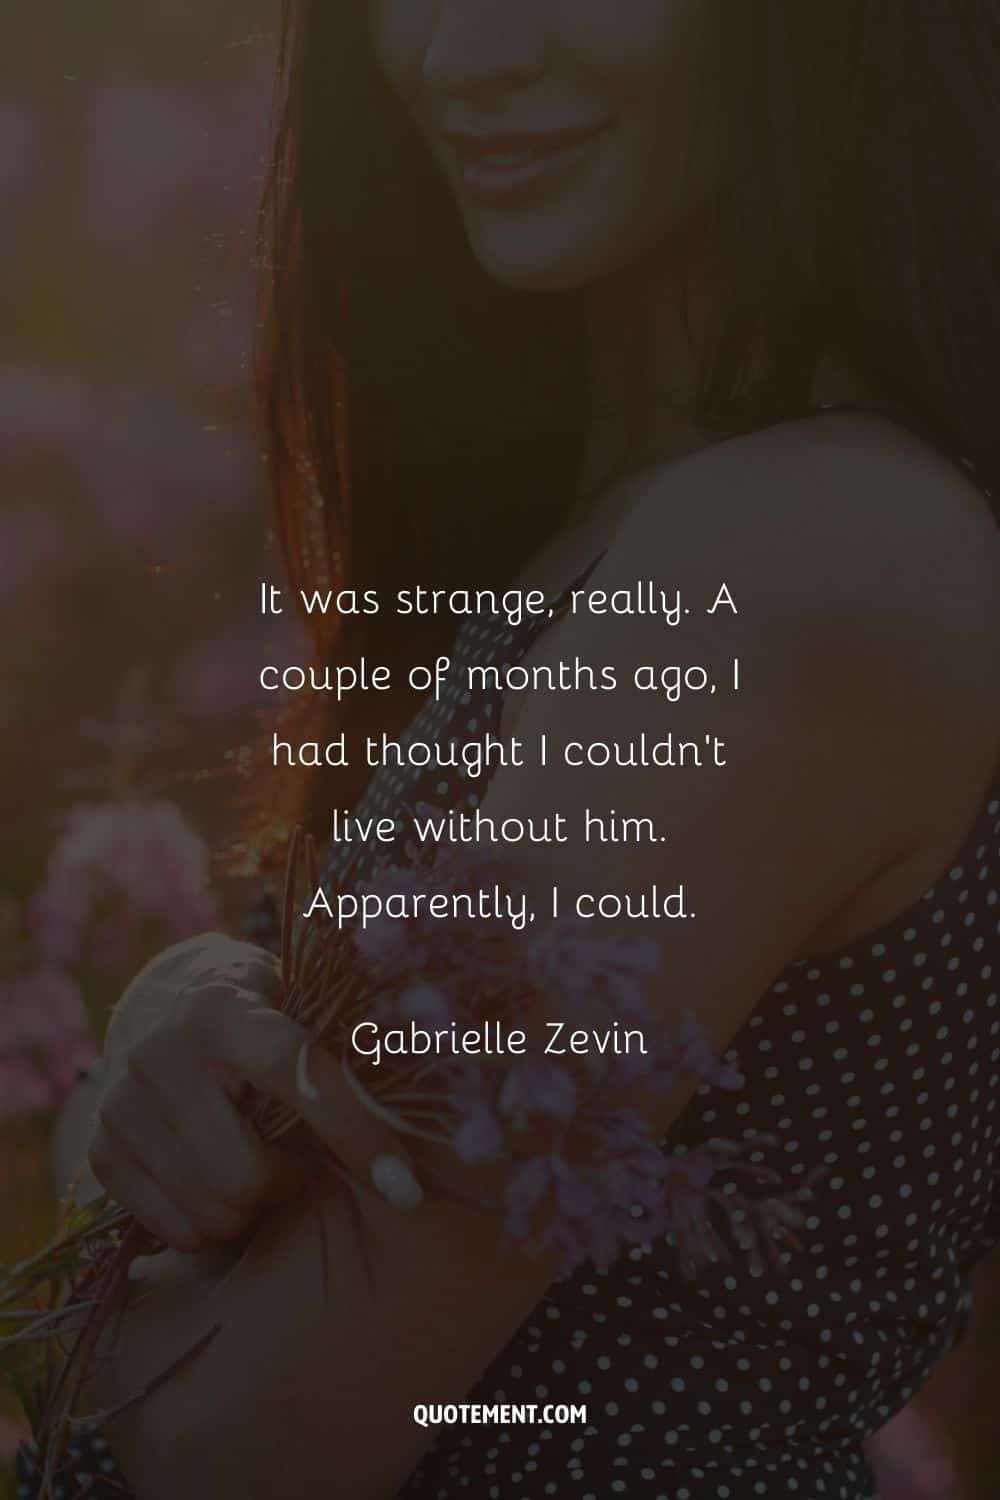 "Fue extraño, de verdad. Hace un par de meses, pensaba que no podía vivir sin él. Aparentemente, sí podía". - Gabrielle Zevin